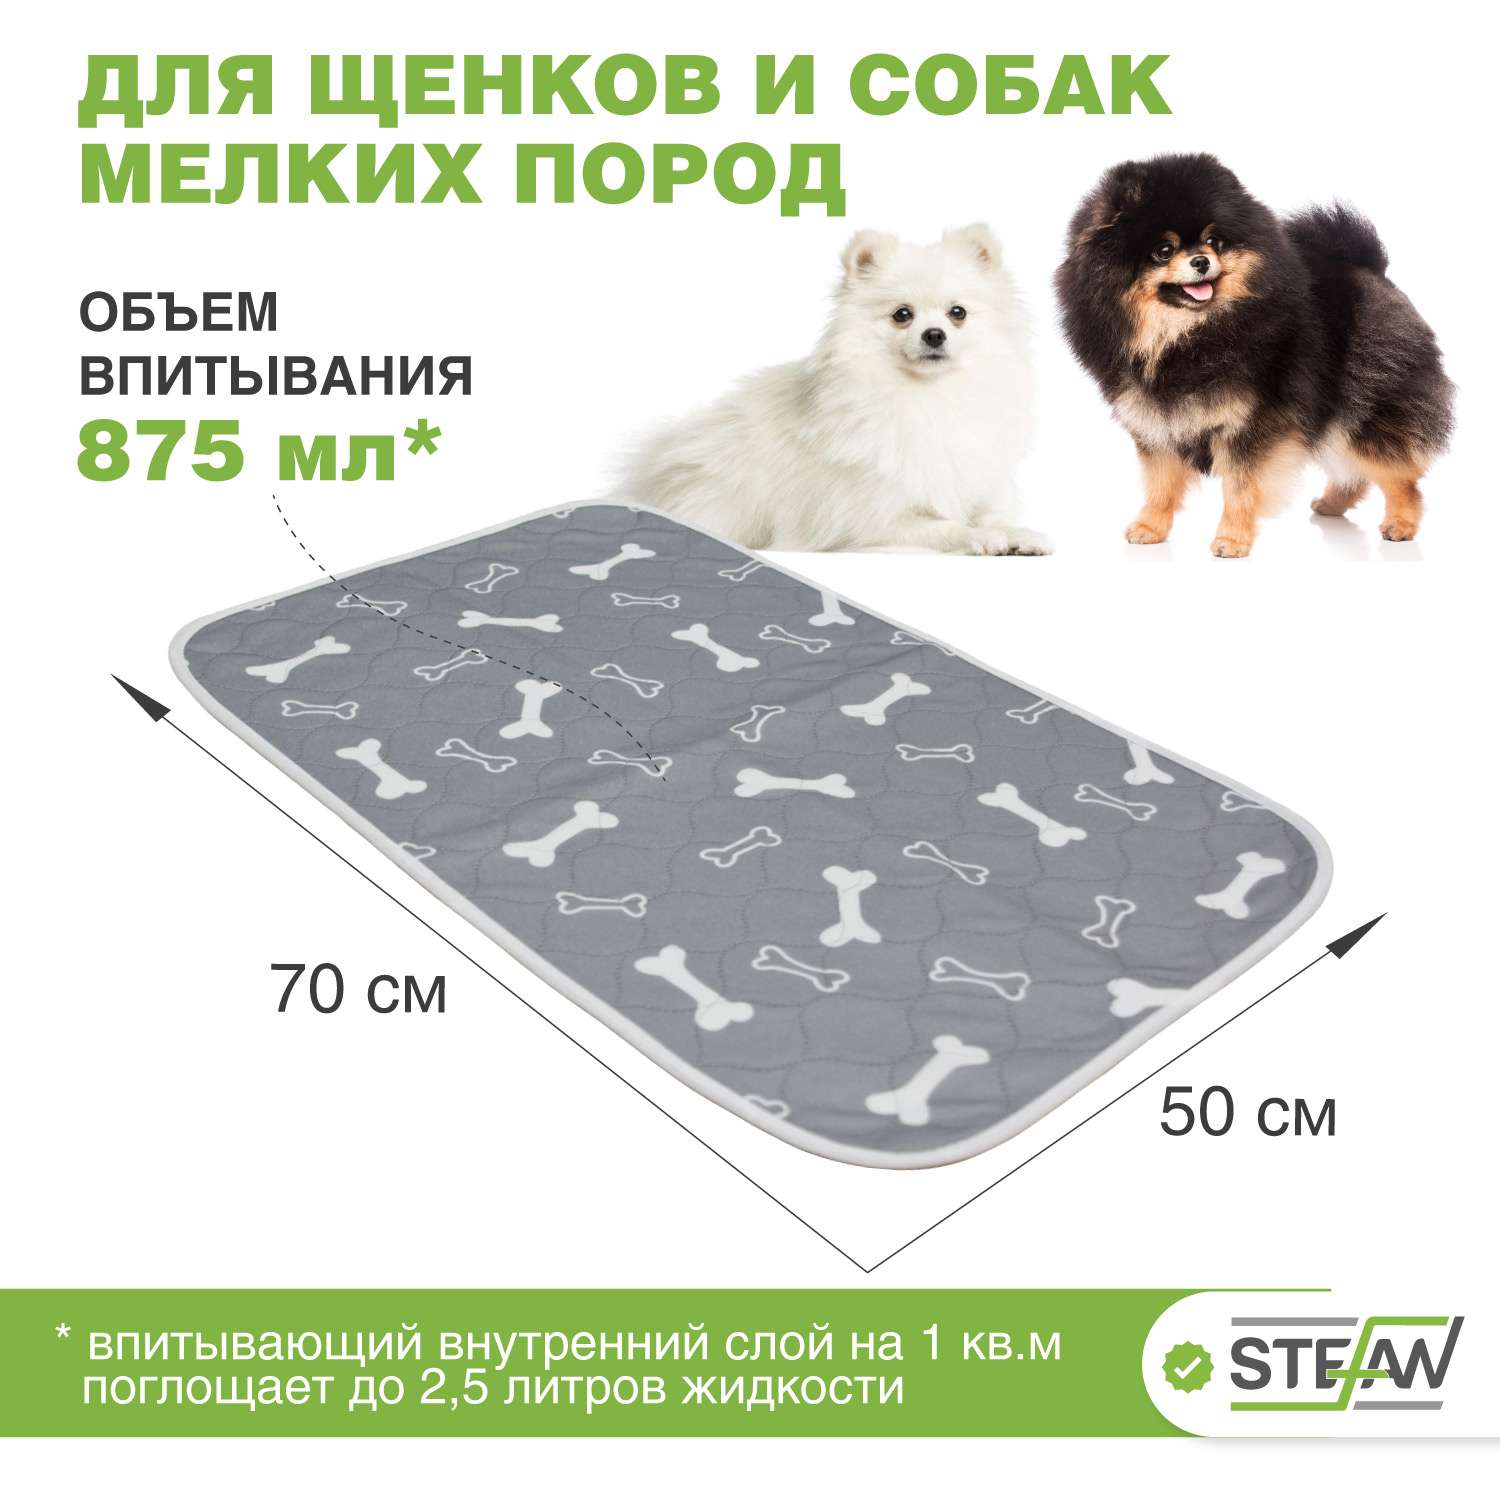 Пеленка для животных Stefan впитывающая многоразовая серая 50х70см - фото 2